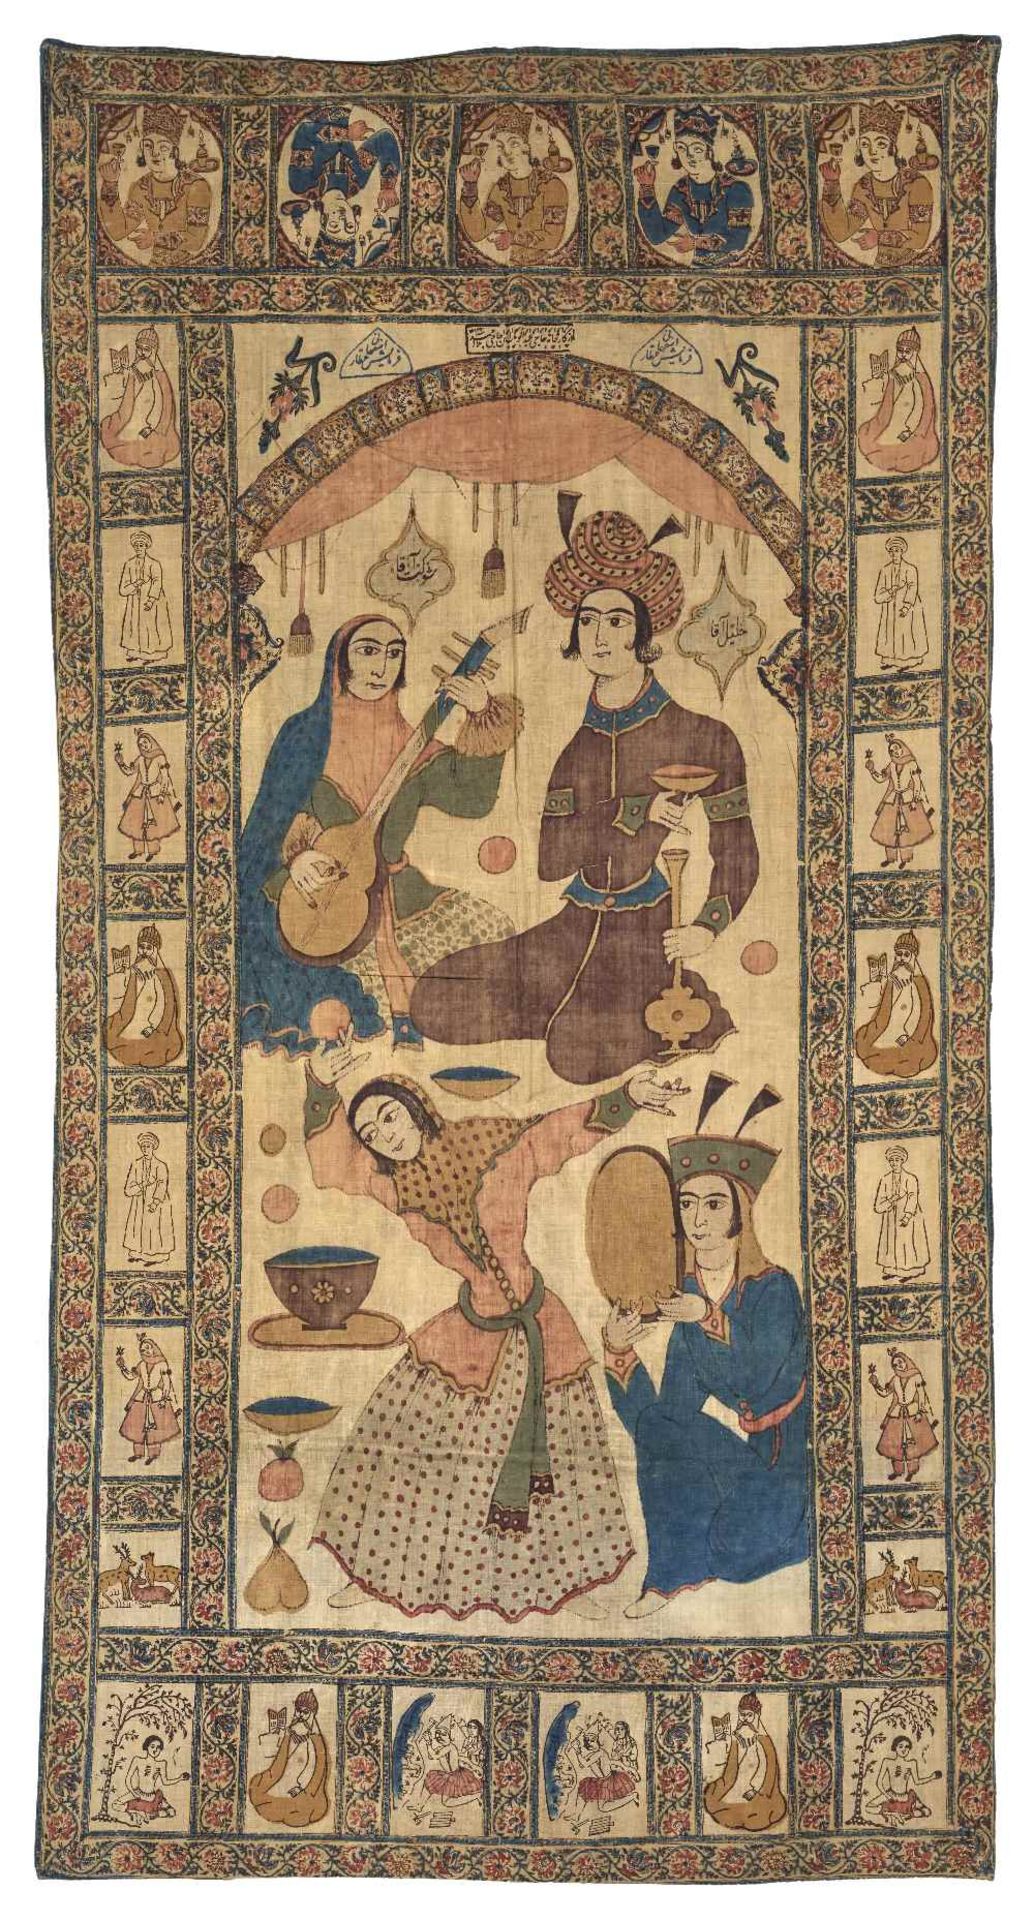 Kalamkar figuratifIran, dat" 1213 (=1834)Tenture en coton à décor polychrome peint à la main, de